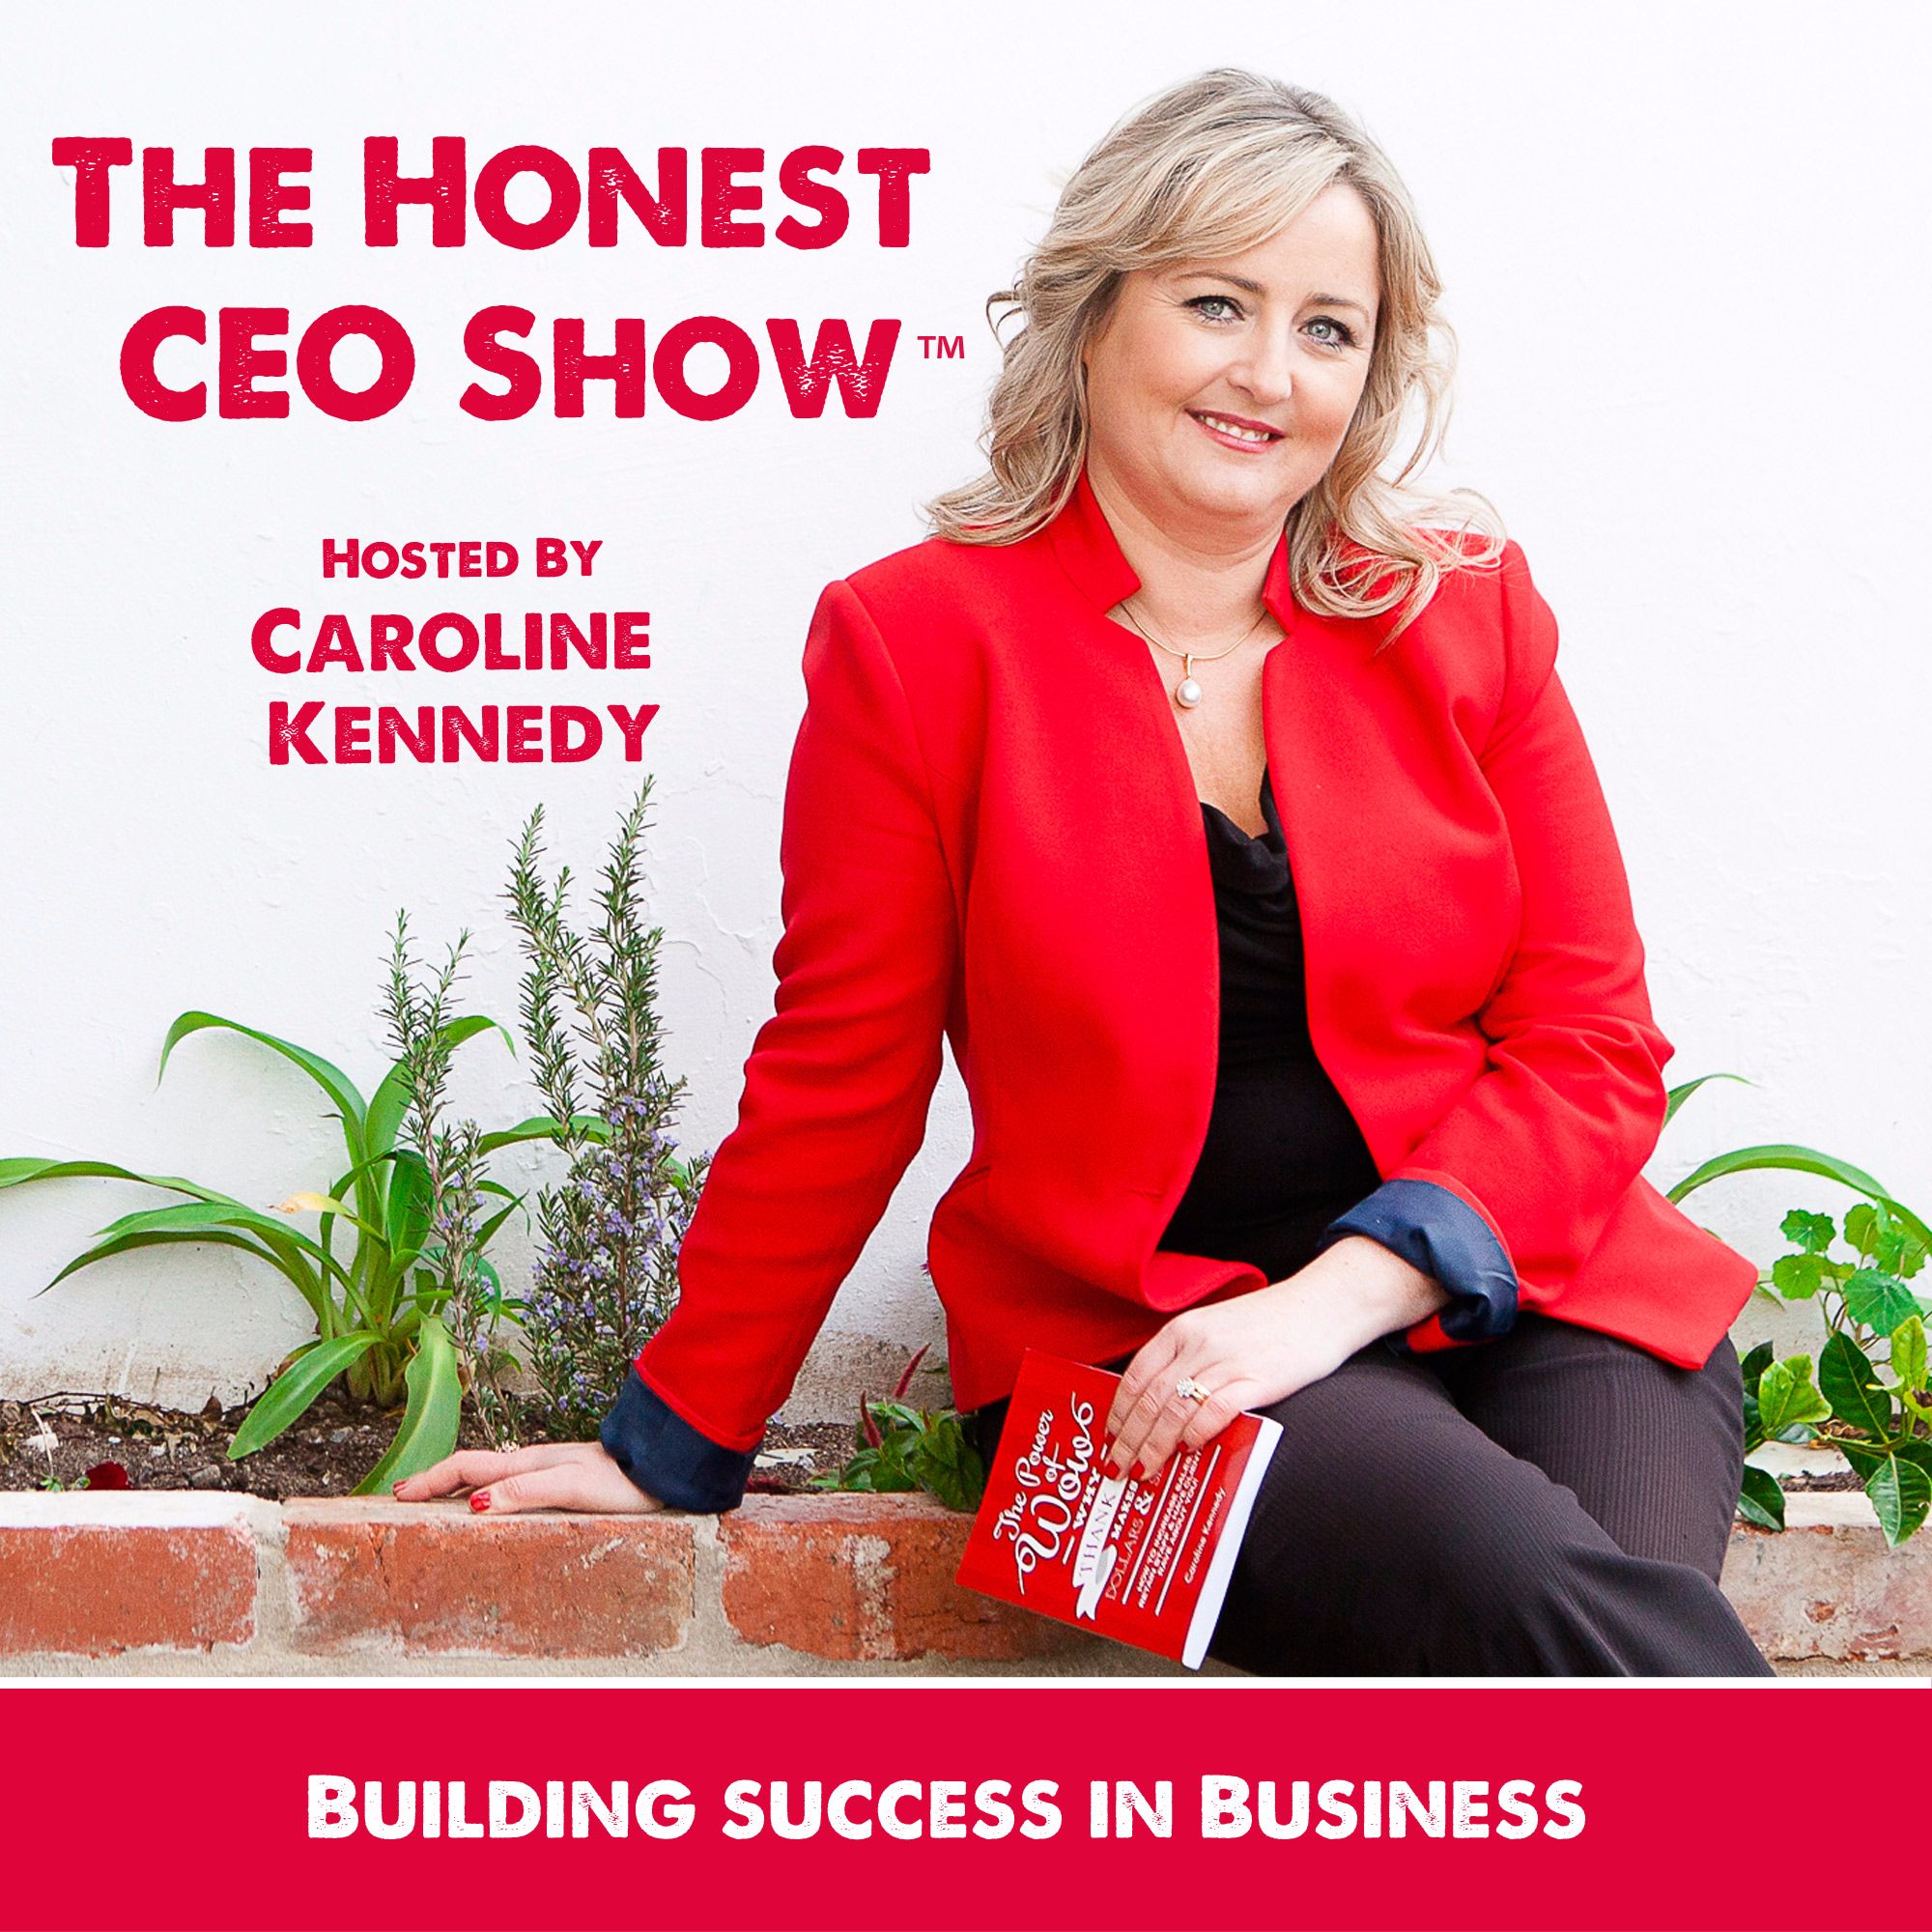 The Honest CEO Show